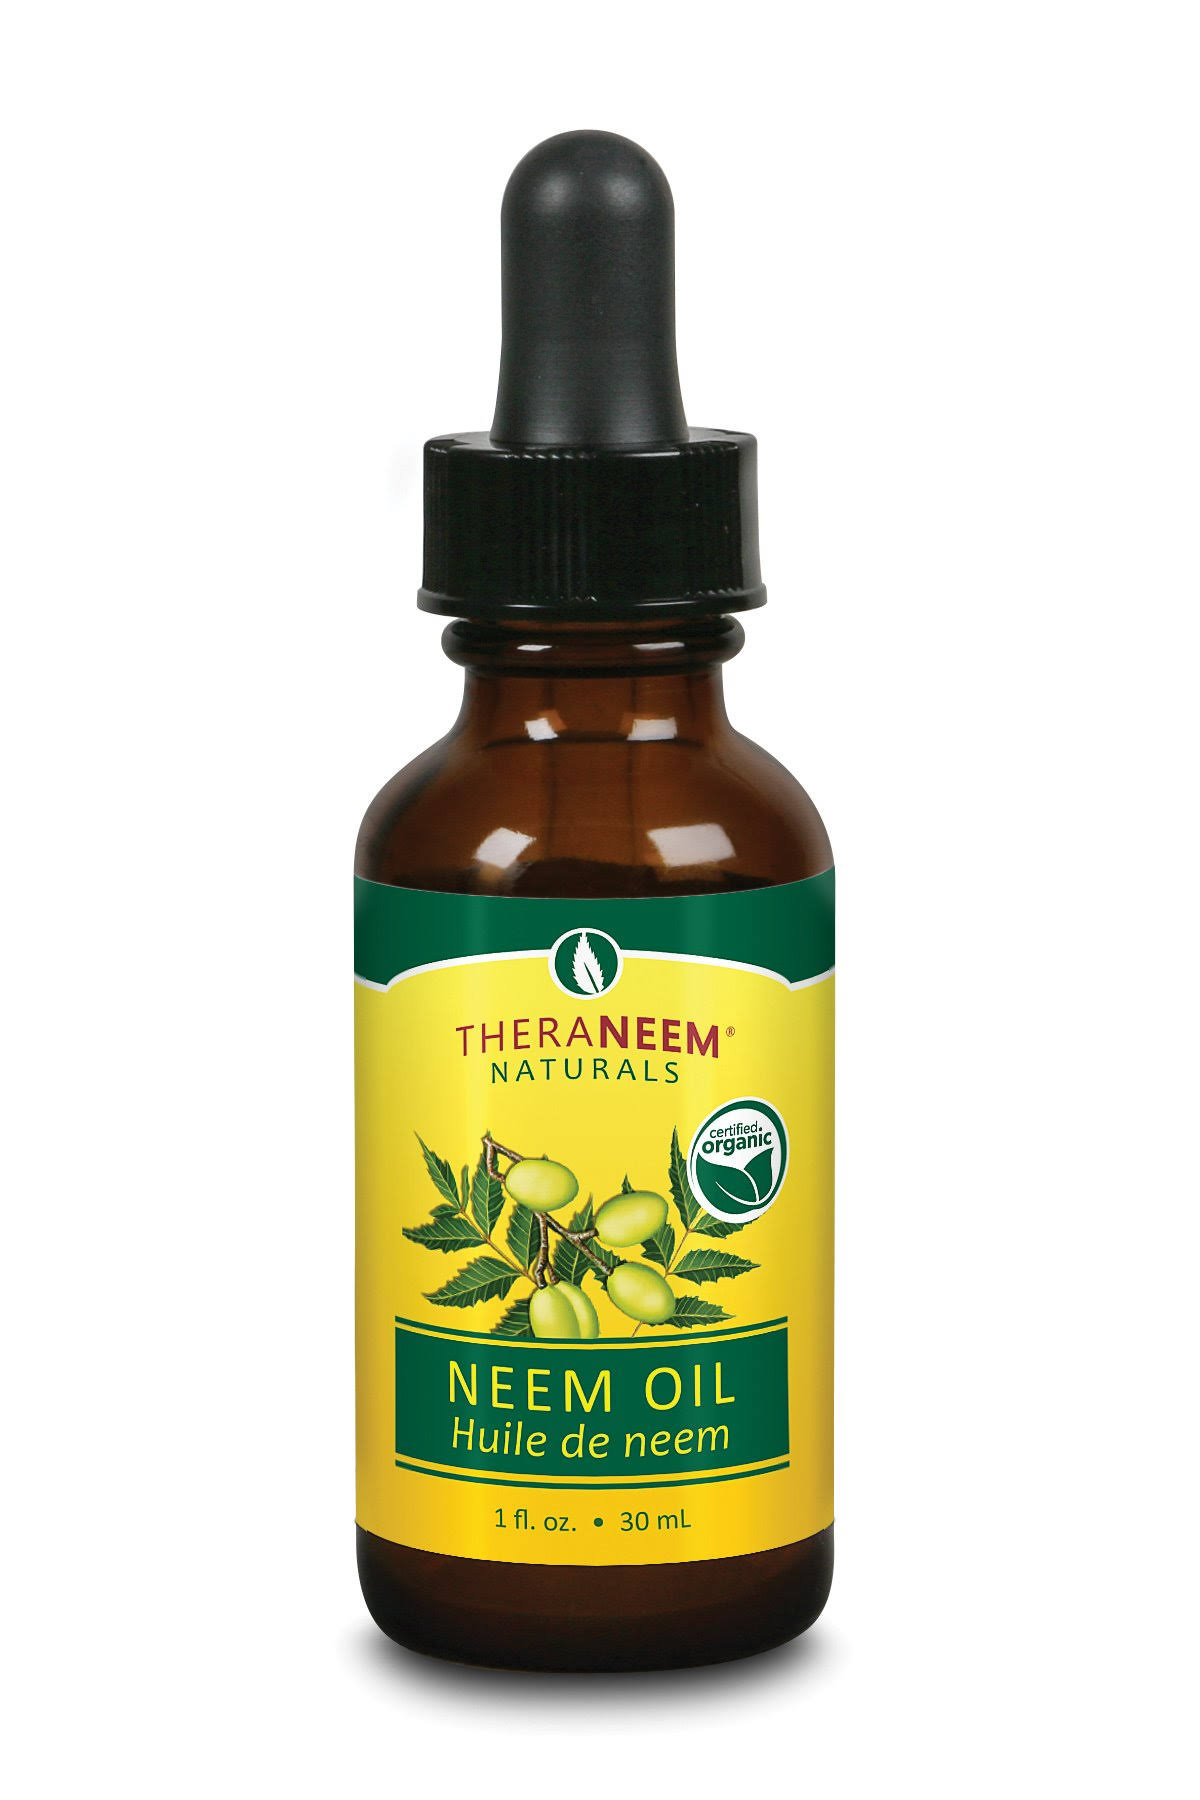 Theraneem Neem Oil - 30ml